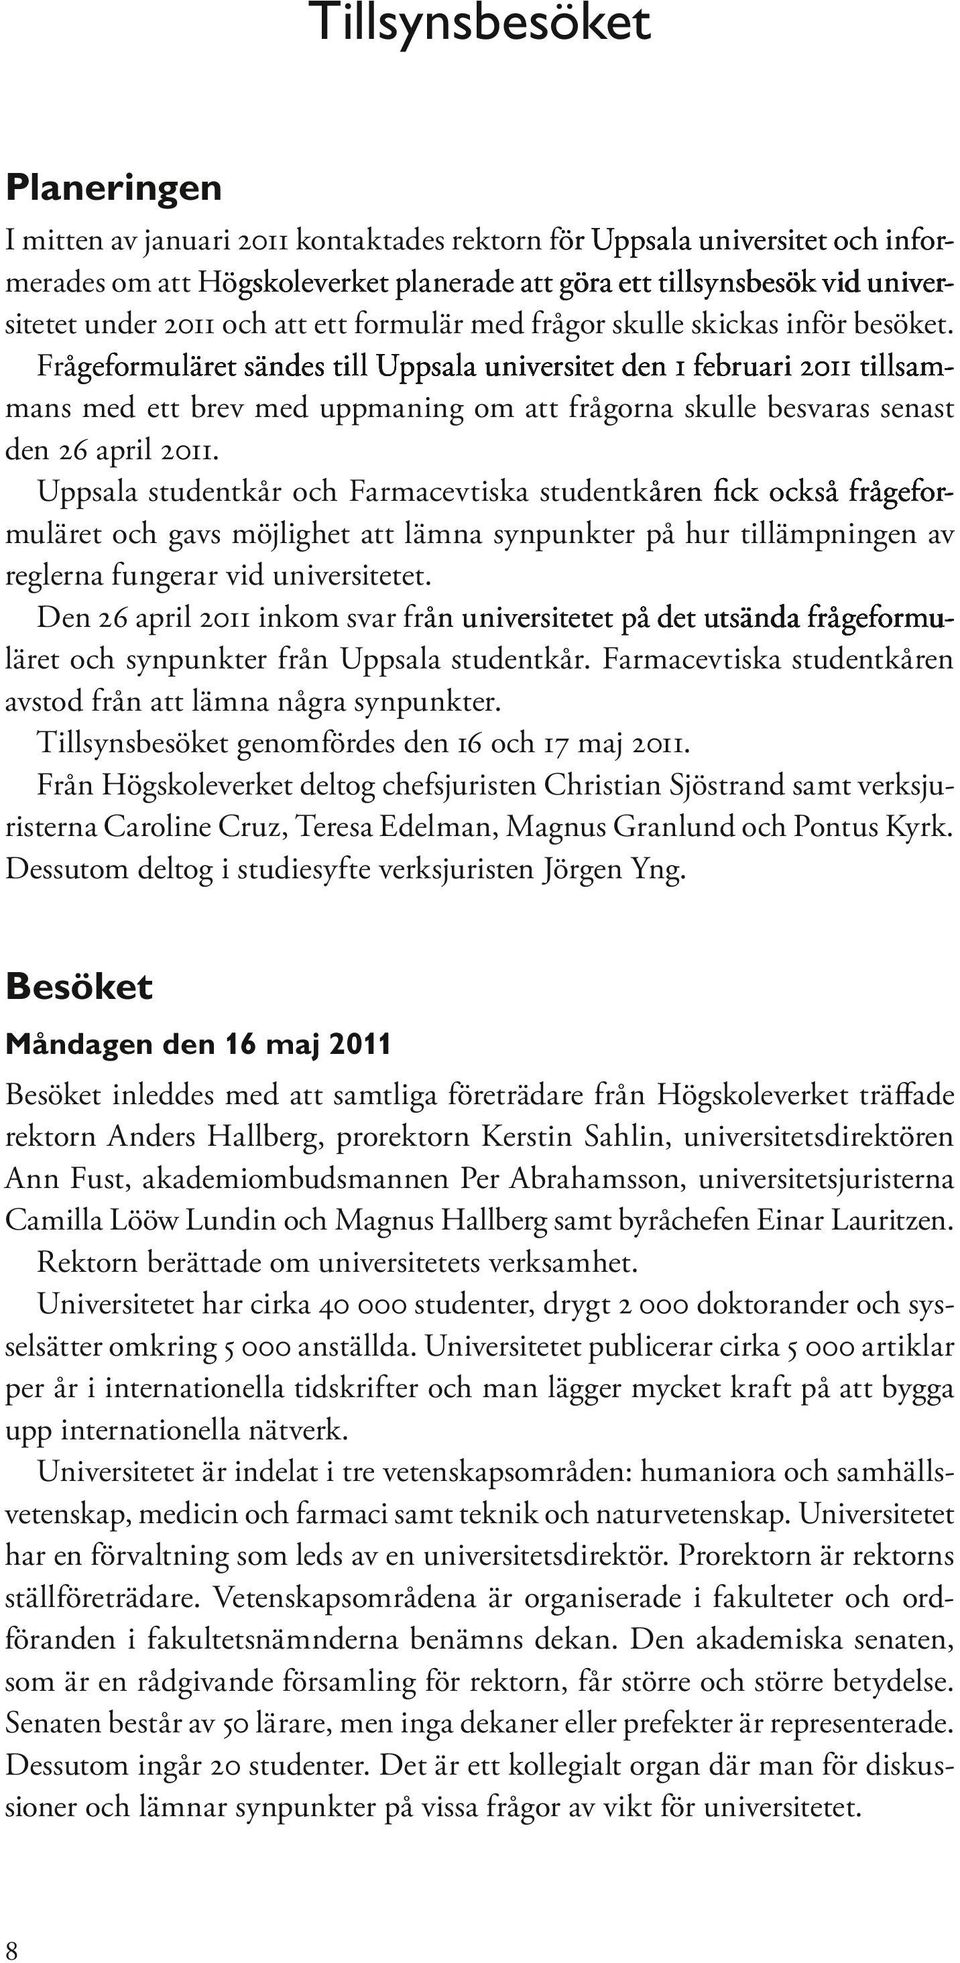 Frågeformuläret ret sändes till Uppsala universitet den 1 februari 2011 tillsammans med ett brev med uppmaning om att frågorna skulle besvaras senast den 26 april 2011.